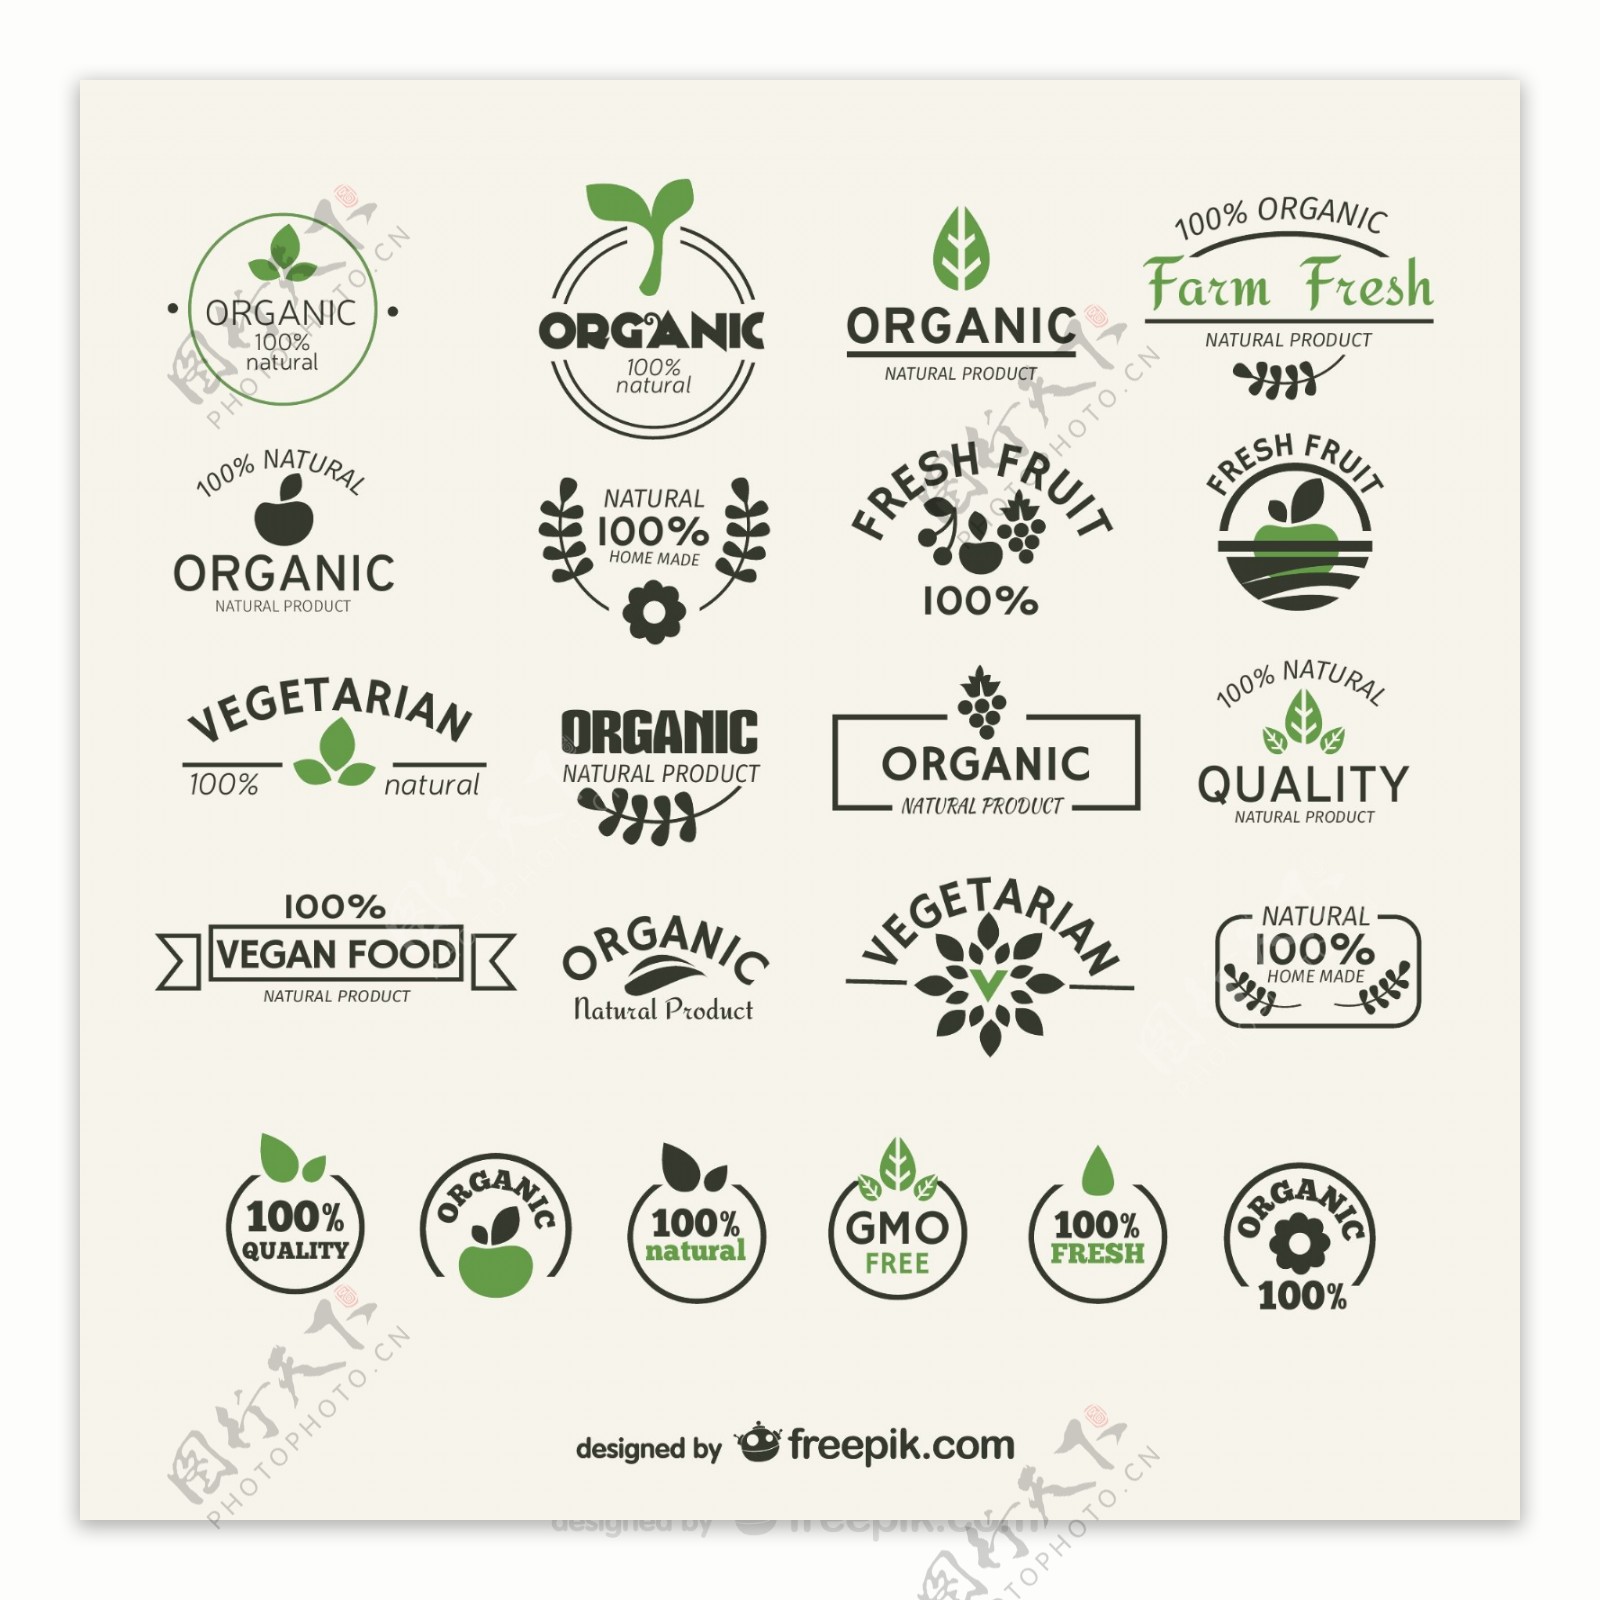 22款绿色天然食品标签矢量素材图片